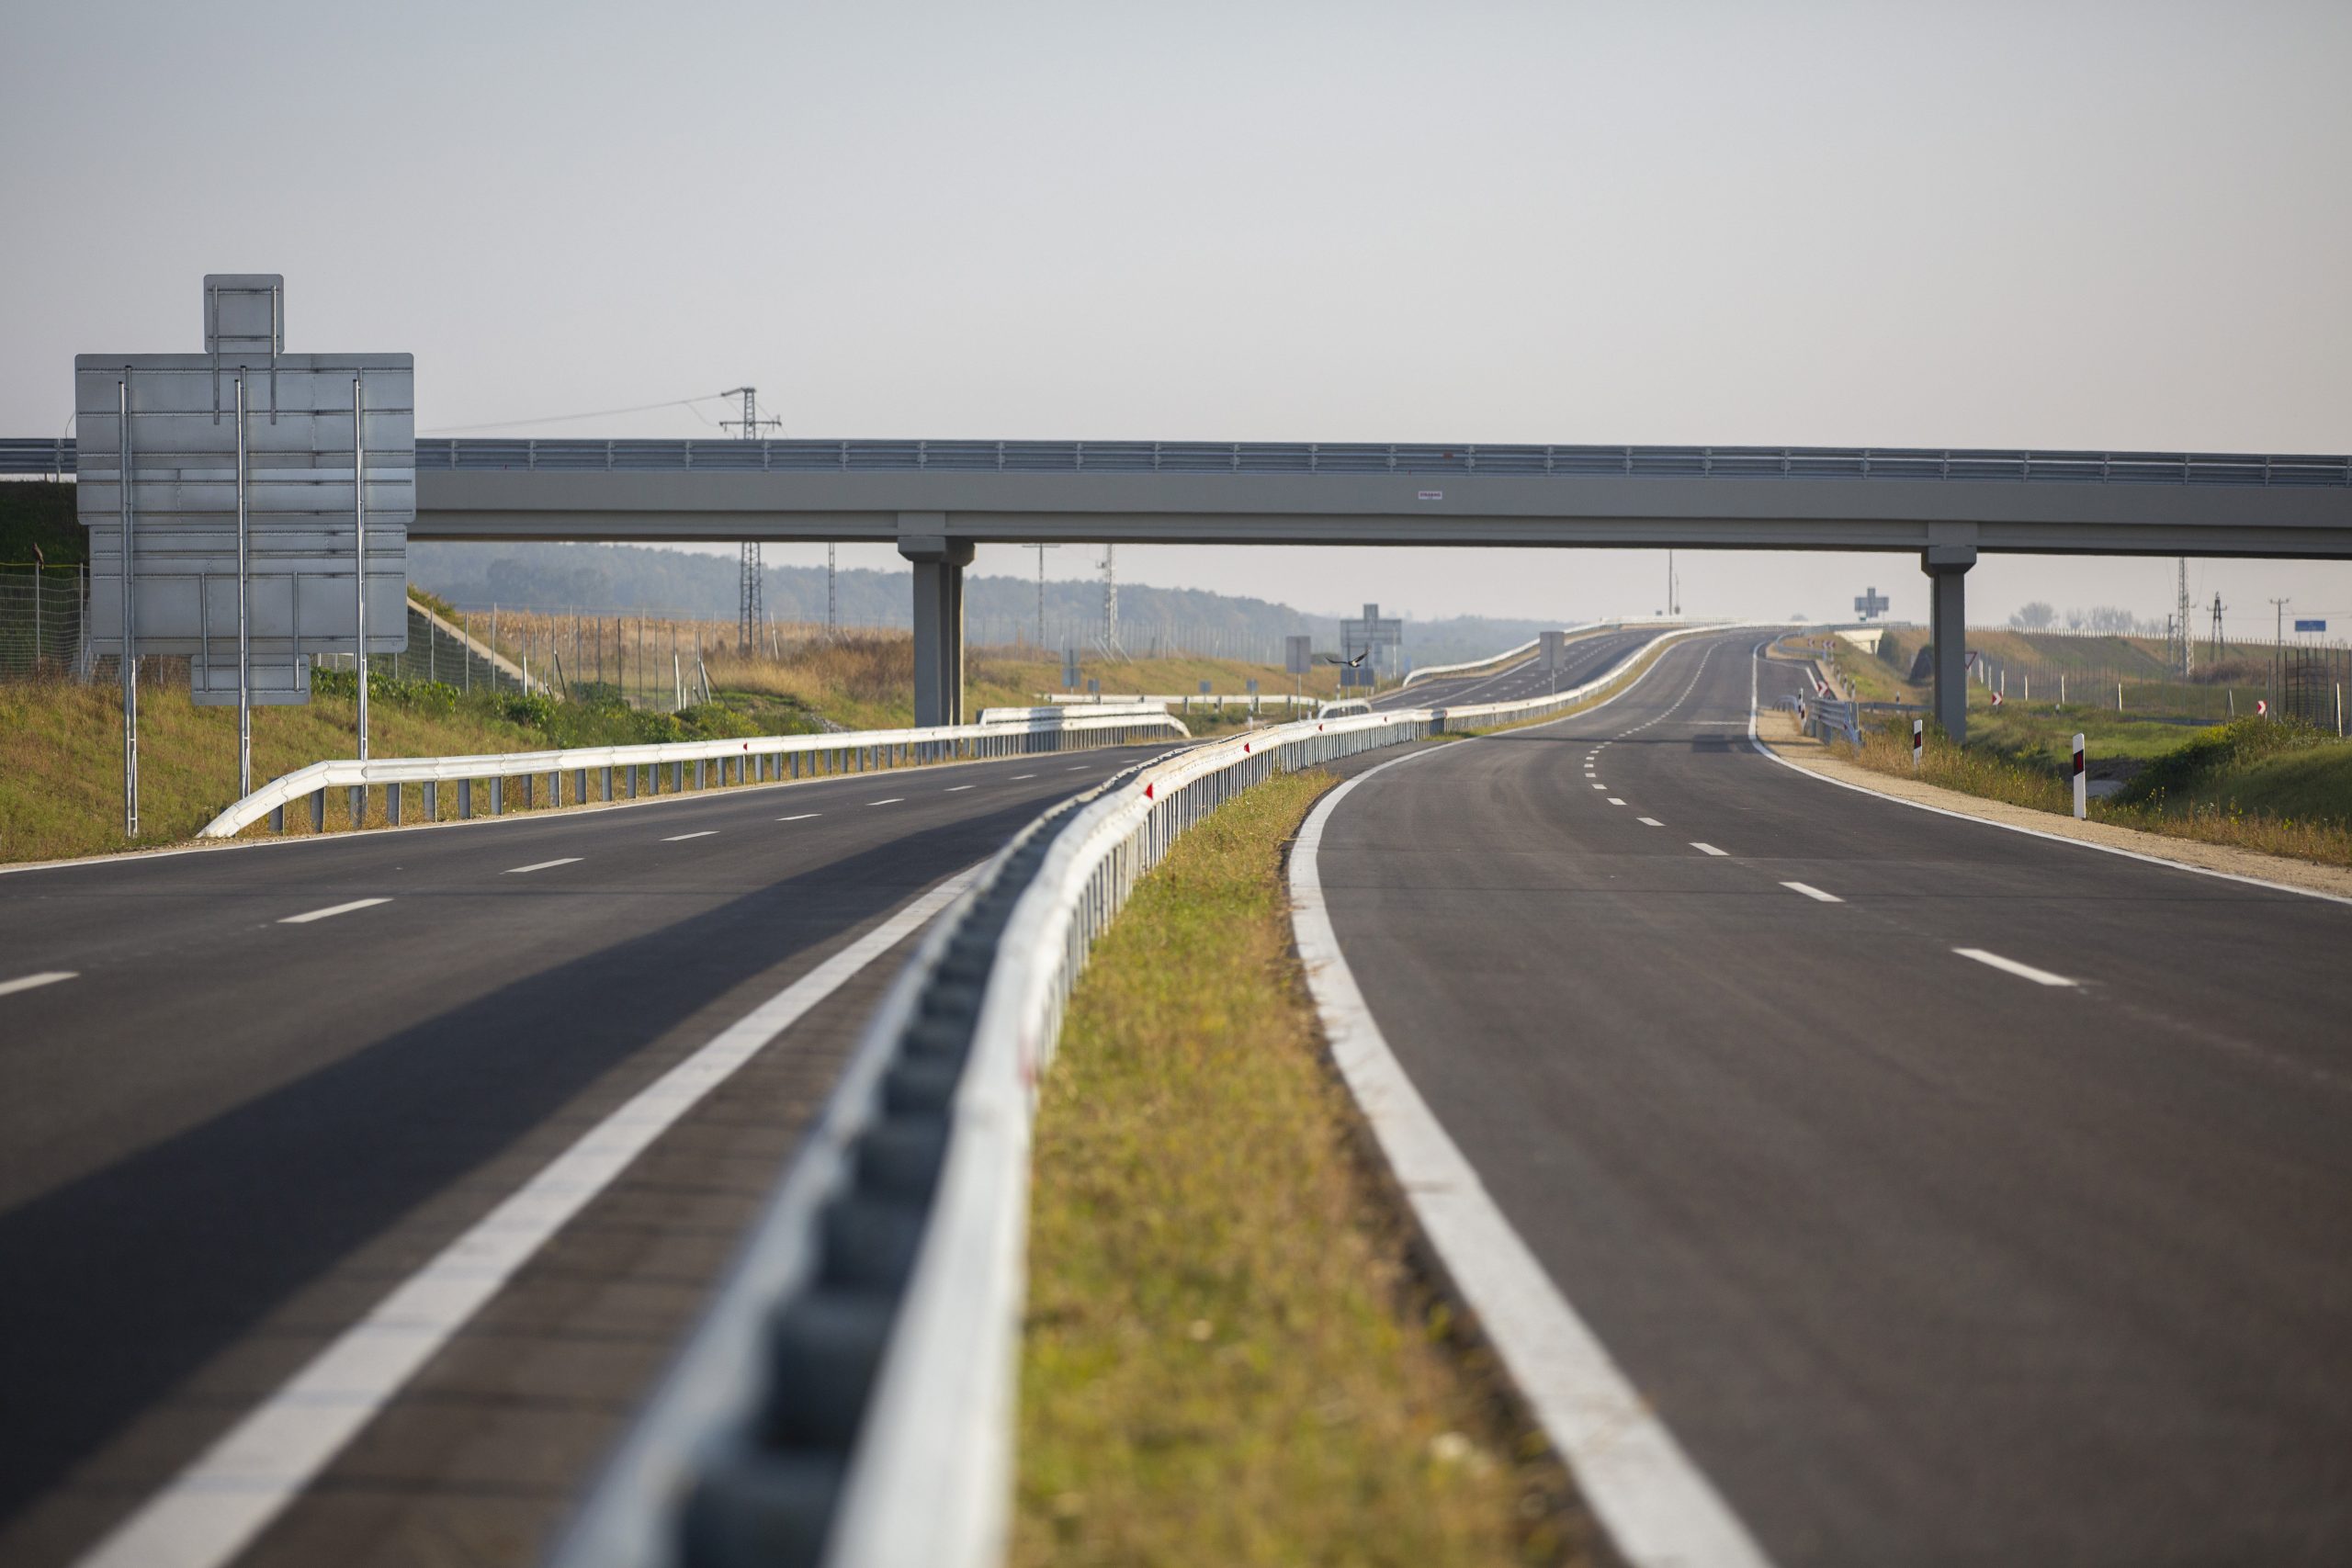 Ungarisches Straßennetz wird für 600 Milliarden Forint ausgebaut